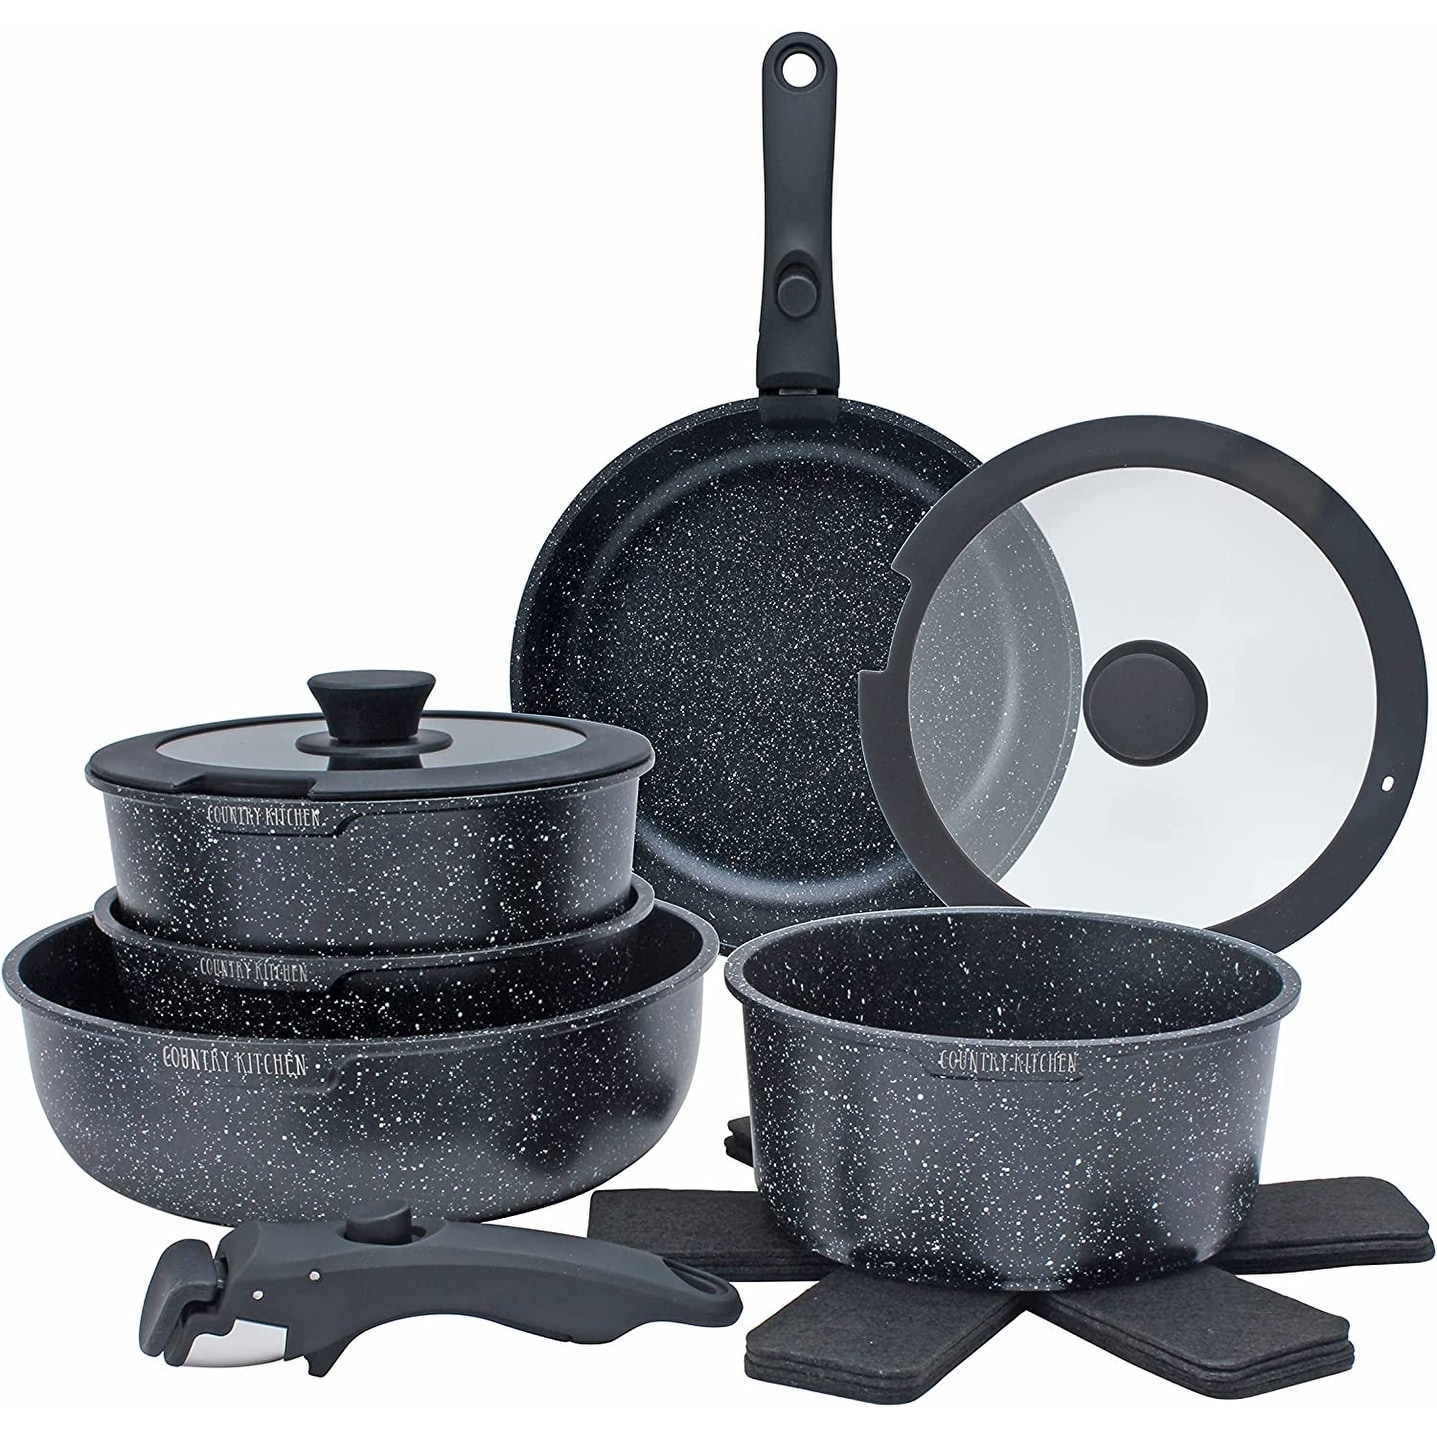 Country Kitchen 13 Piece Pots and Pans Set - Safe Nonstick Cookware Set Detachable  Handle - Bed Bath & Beyond - 37508748